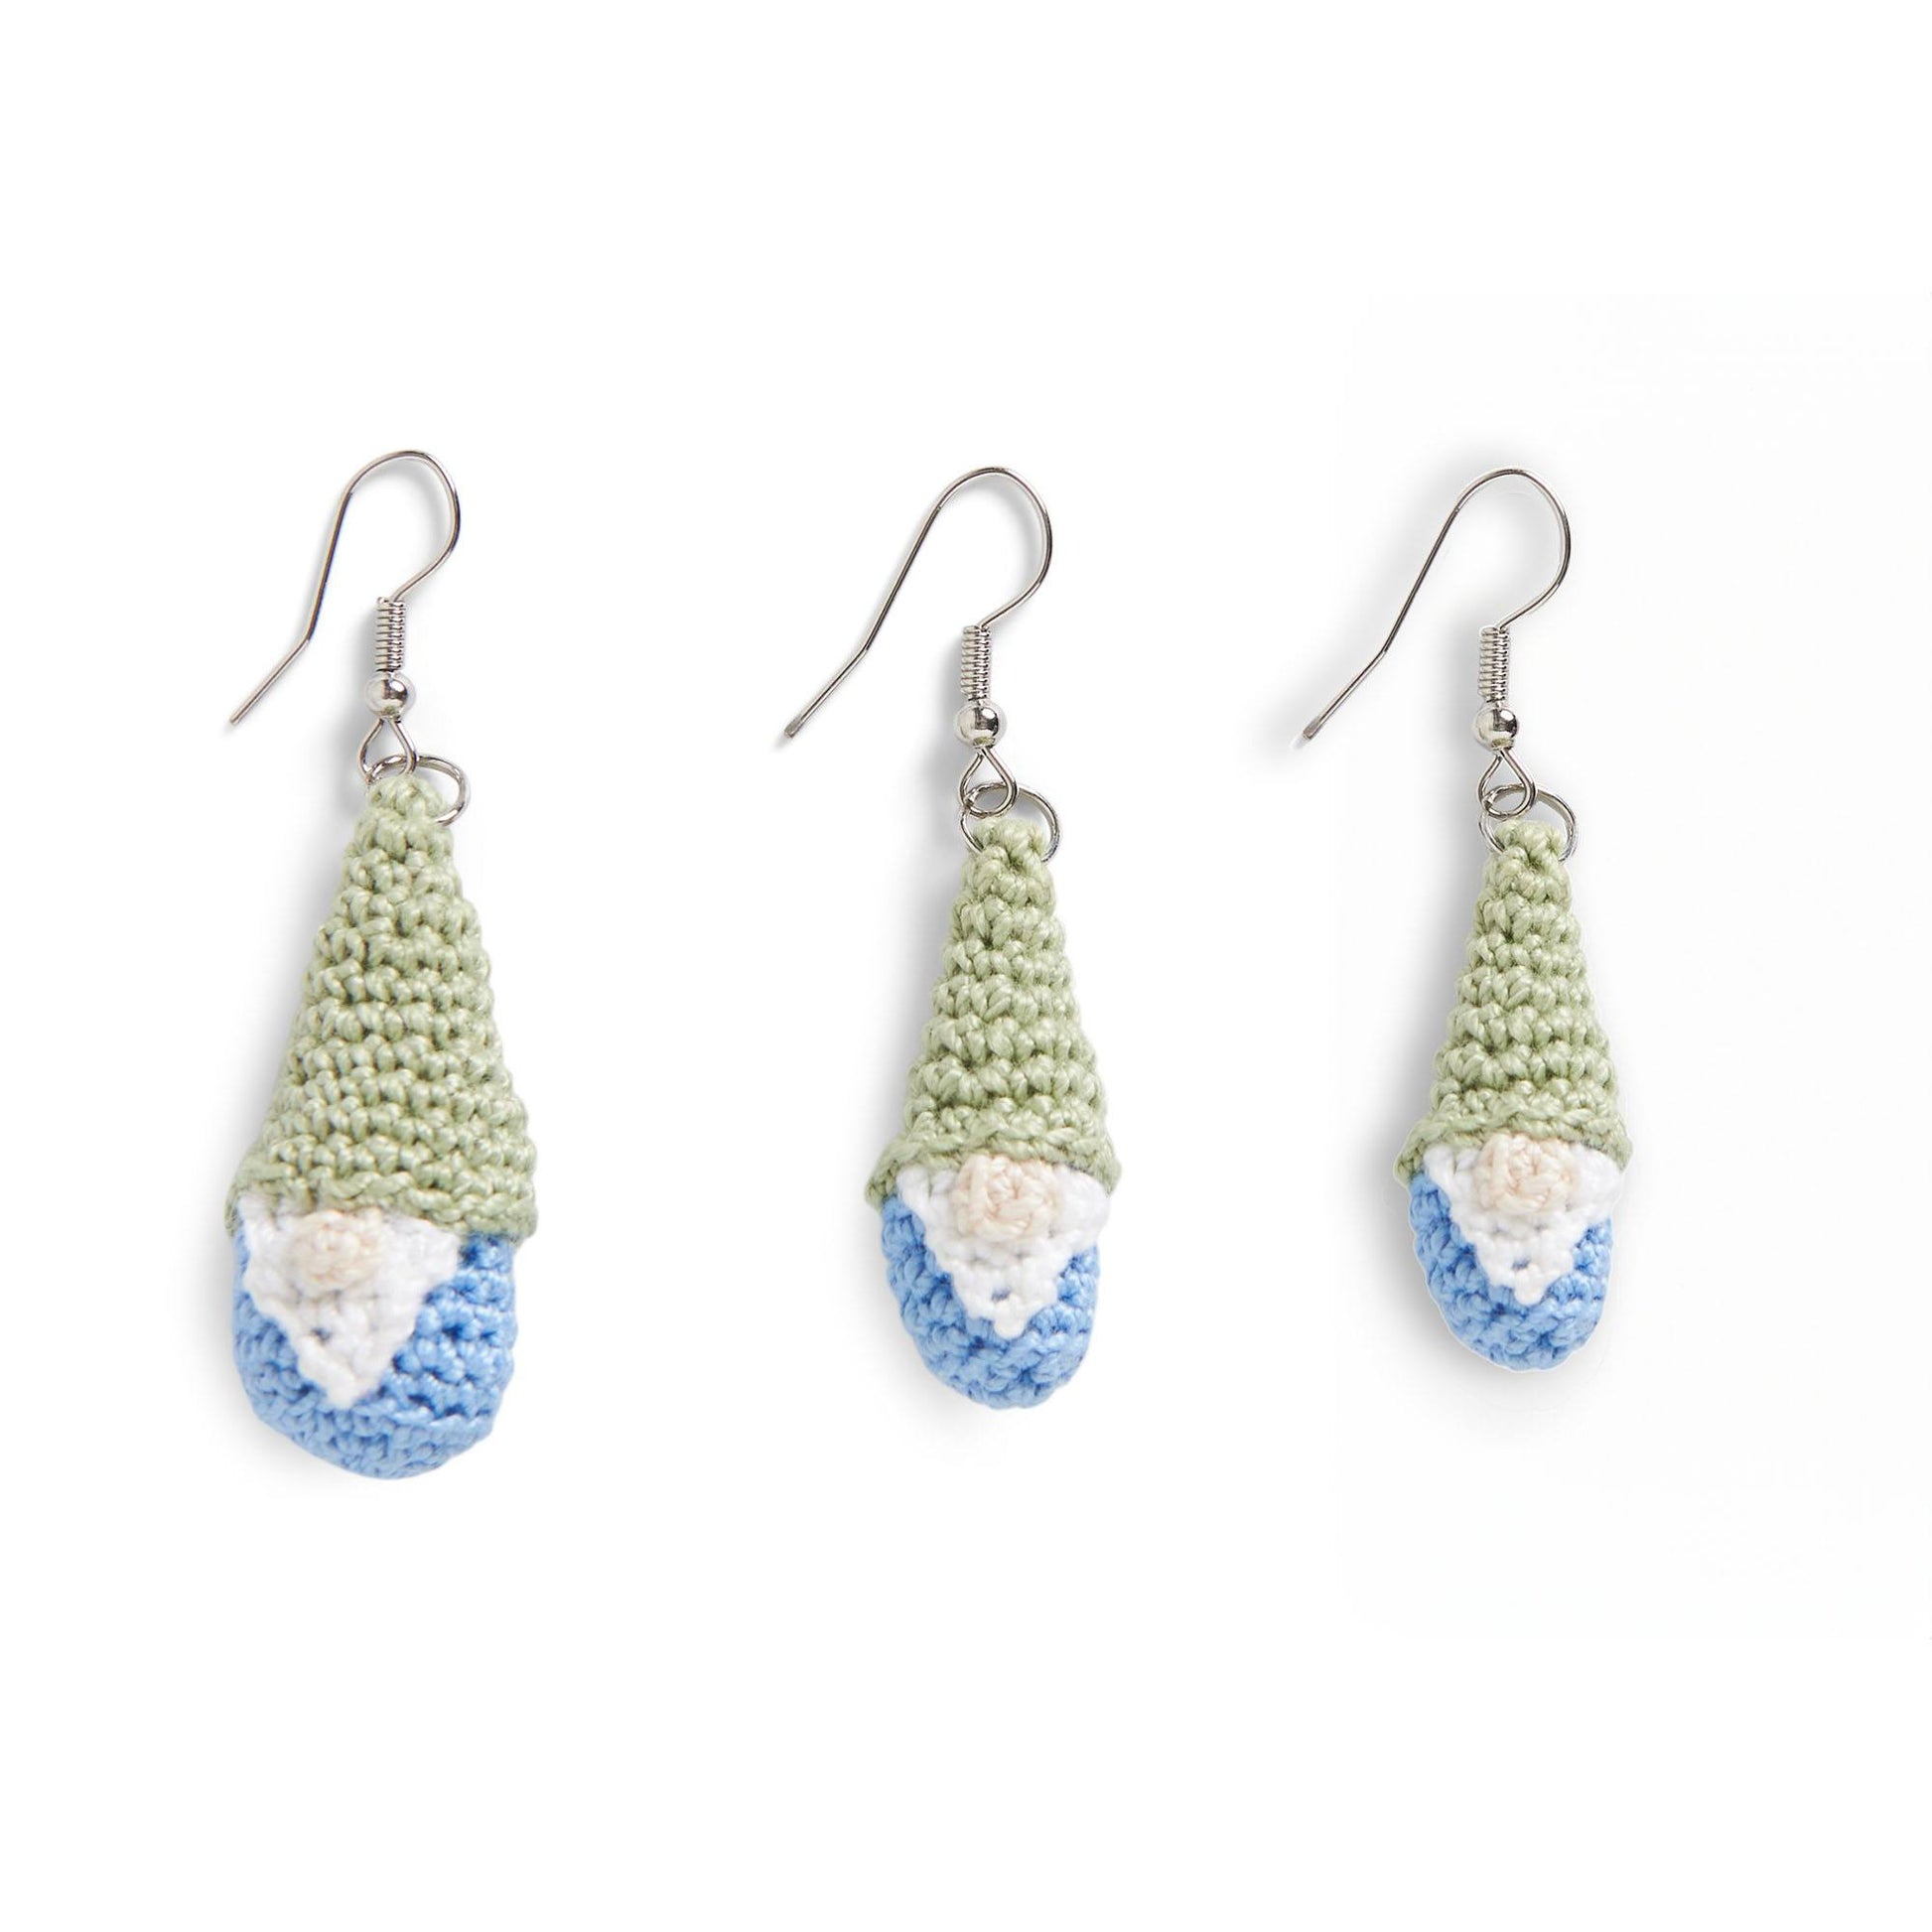 Free Aunt Lydia’s  Crochet Gnome Earrings Pattern